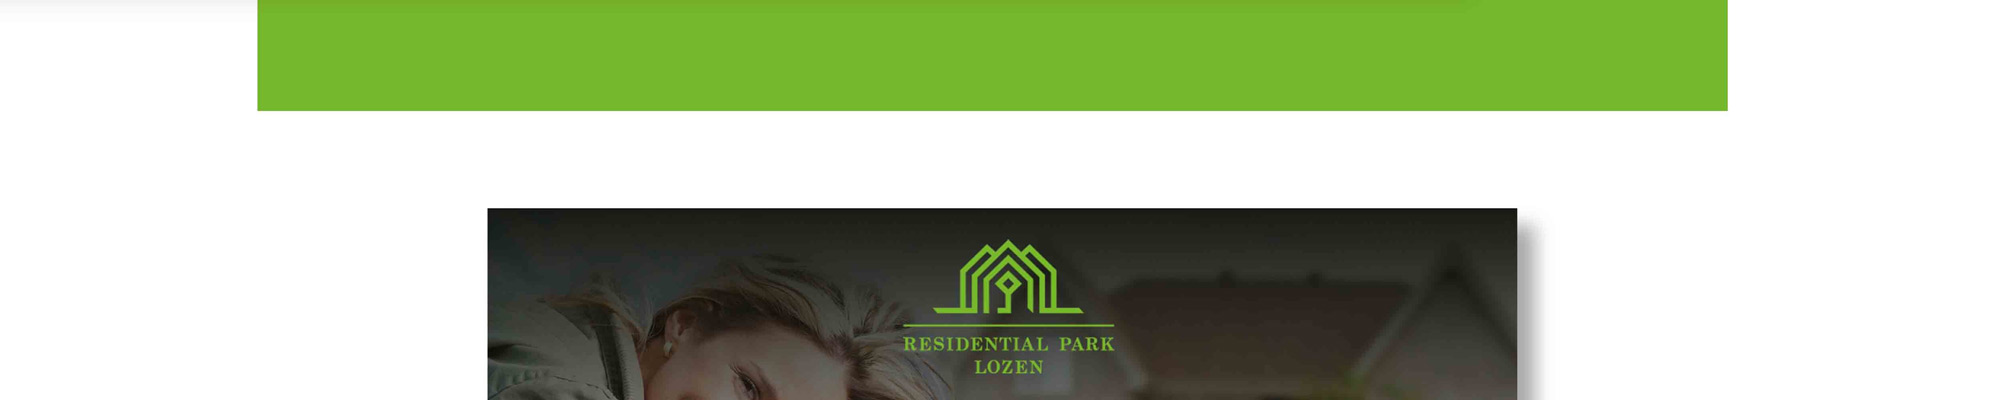 residential-park-lozen